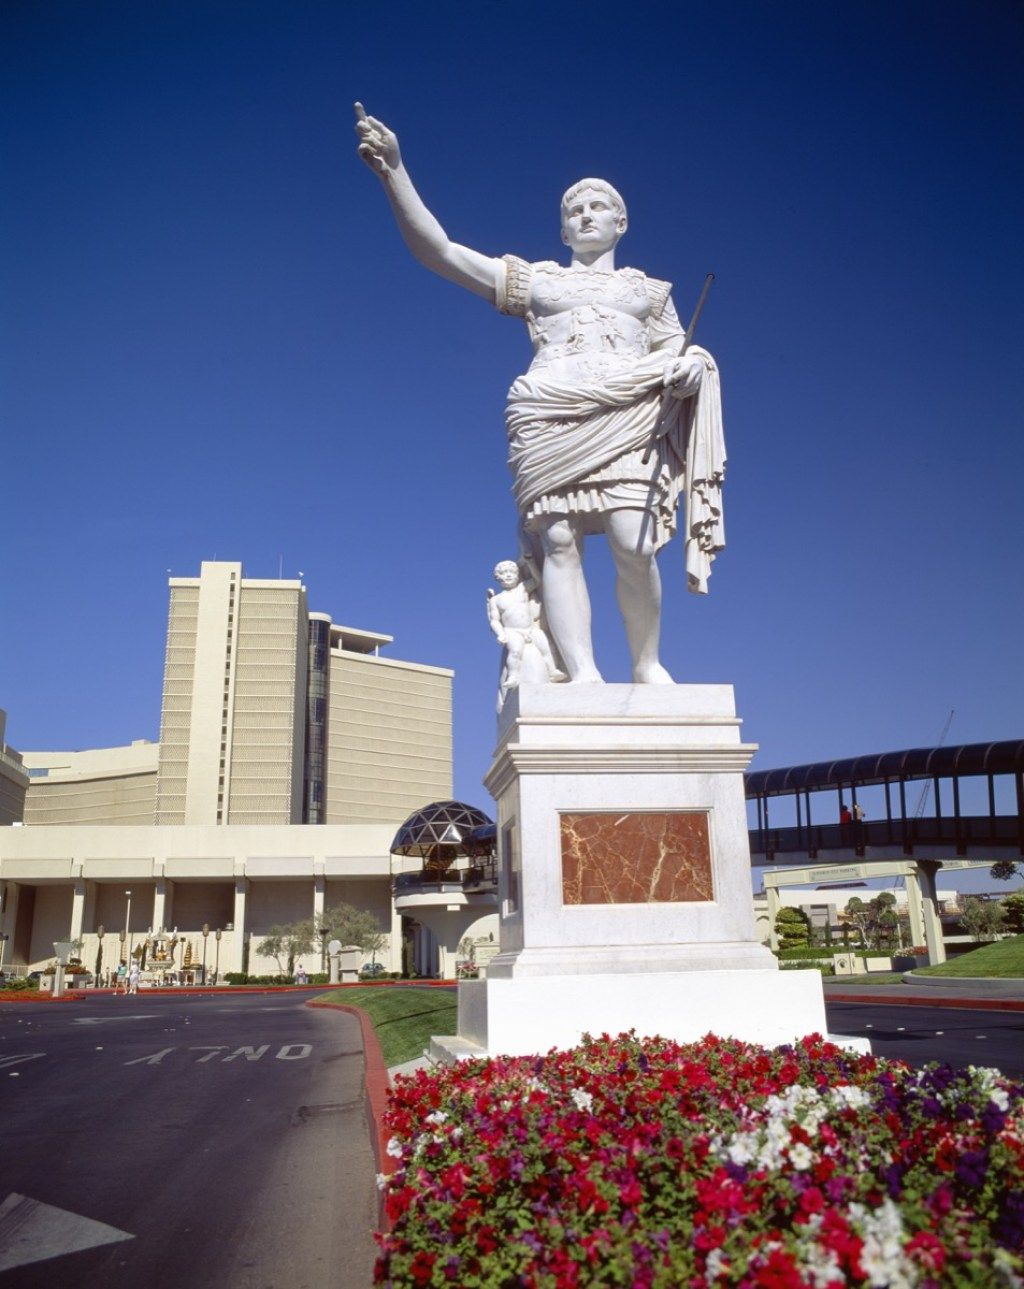 kip palače caesars las vegas nevada poznati državni kipovi